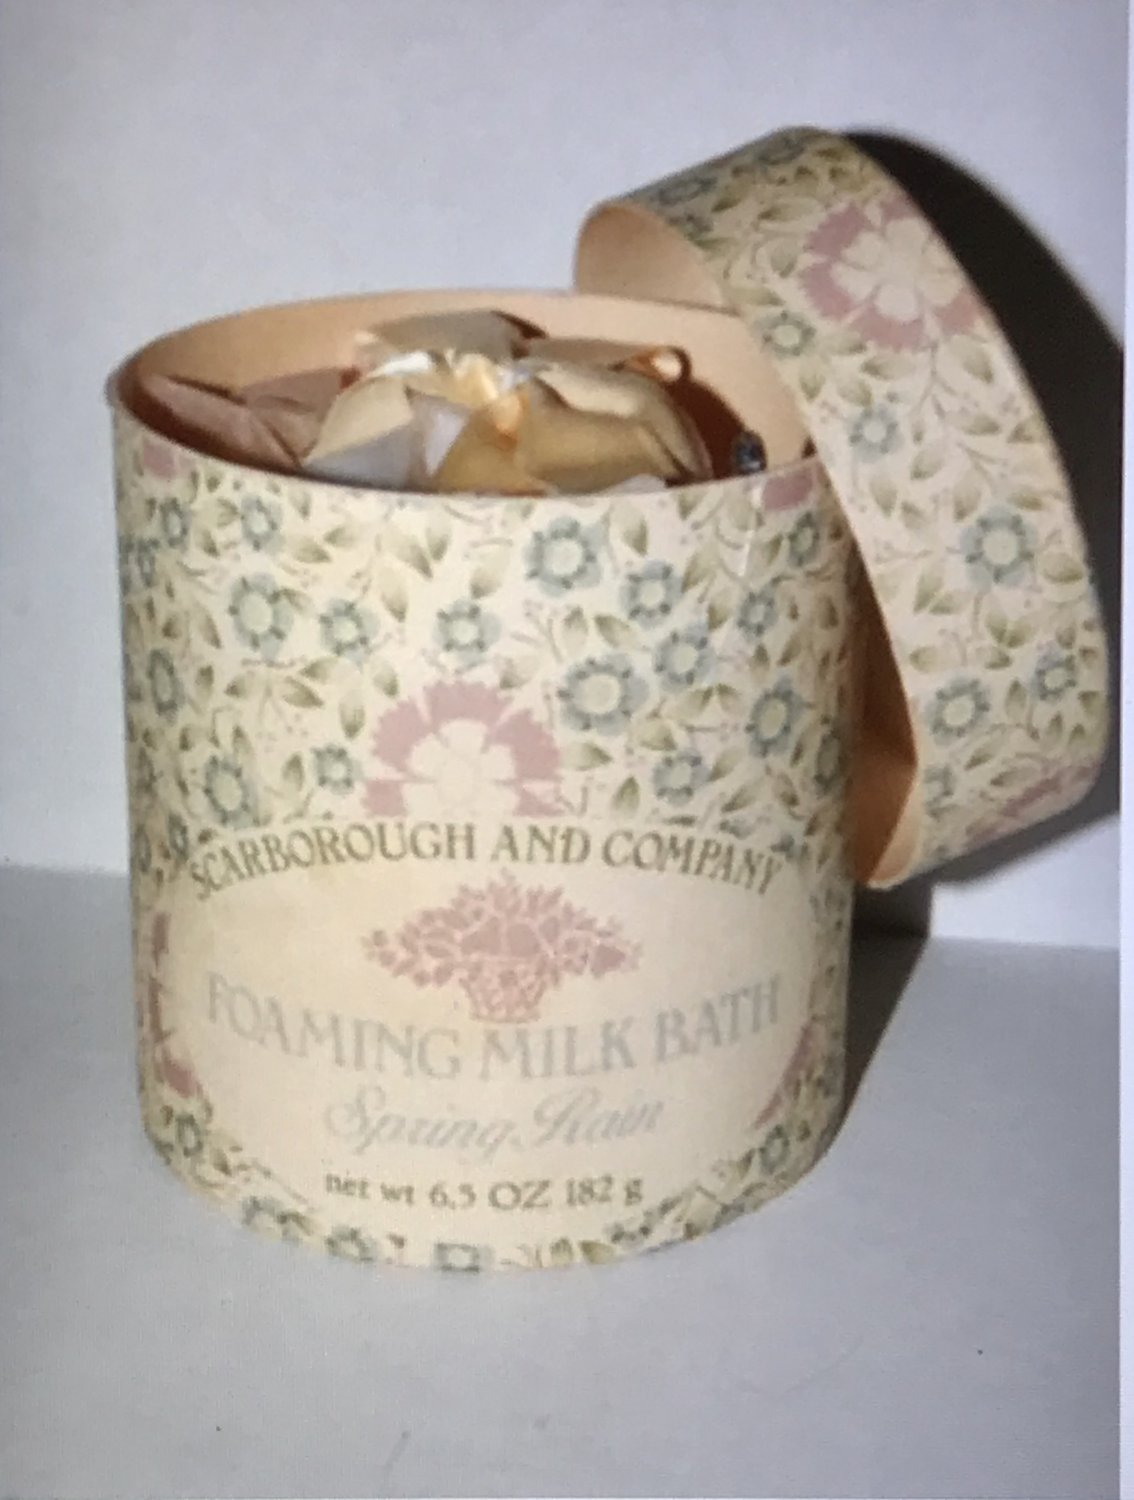 Crabtree Evelyn Foaming Milk Bath Spring Rain 6.5 oz 185g vintage